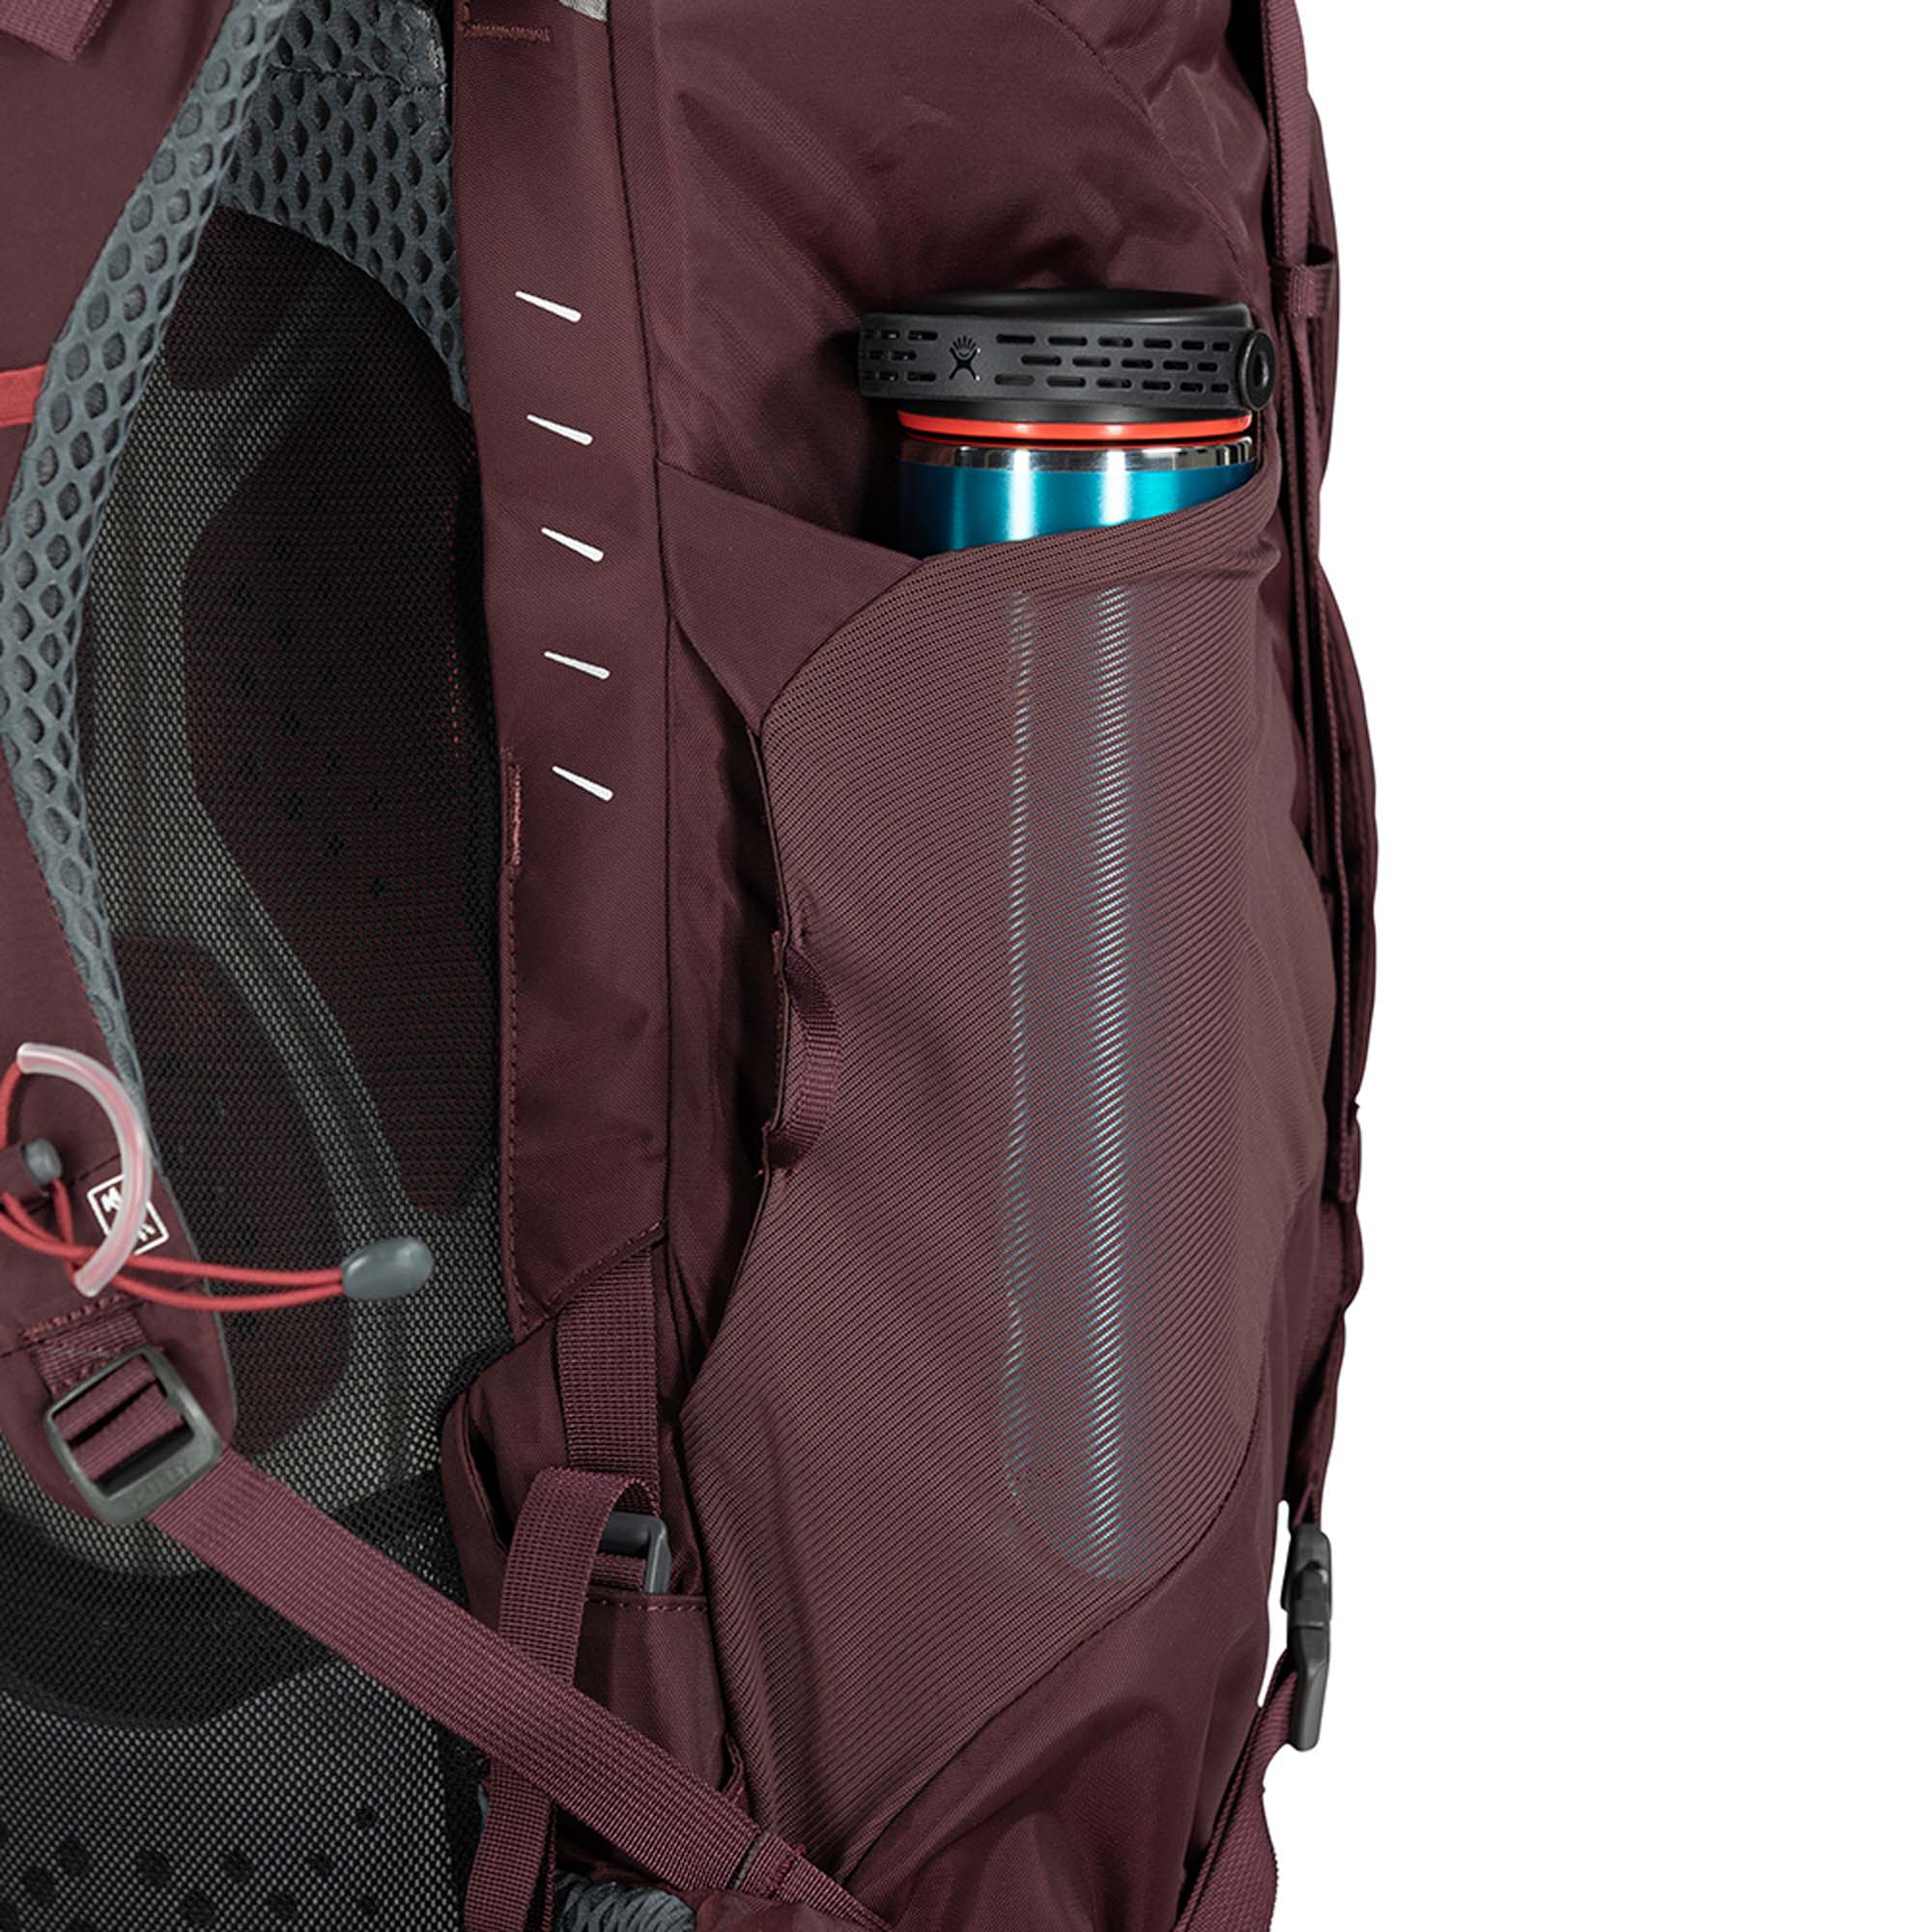 Osprey Kyte 58 Women's Trekking Backpack